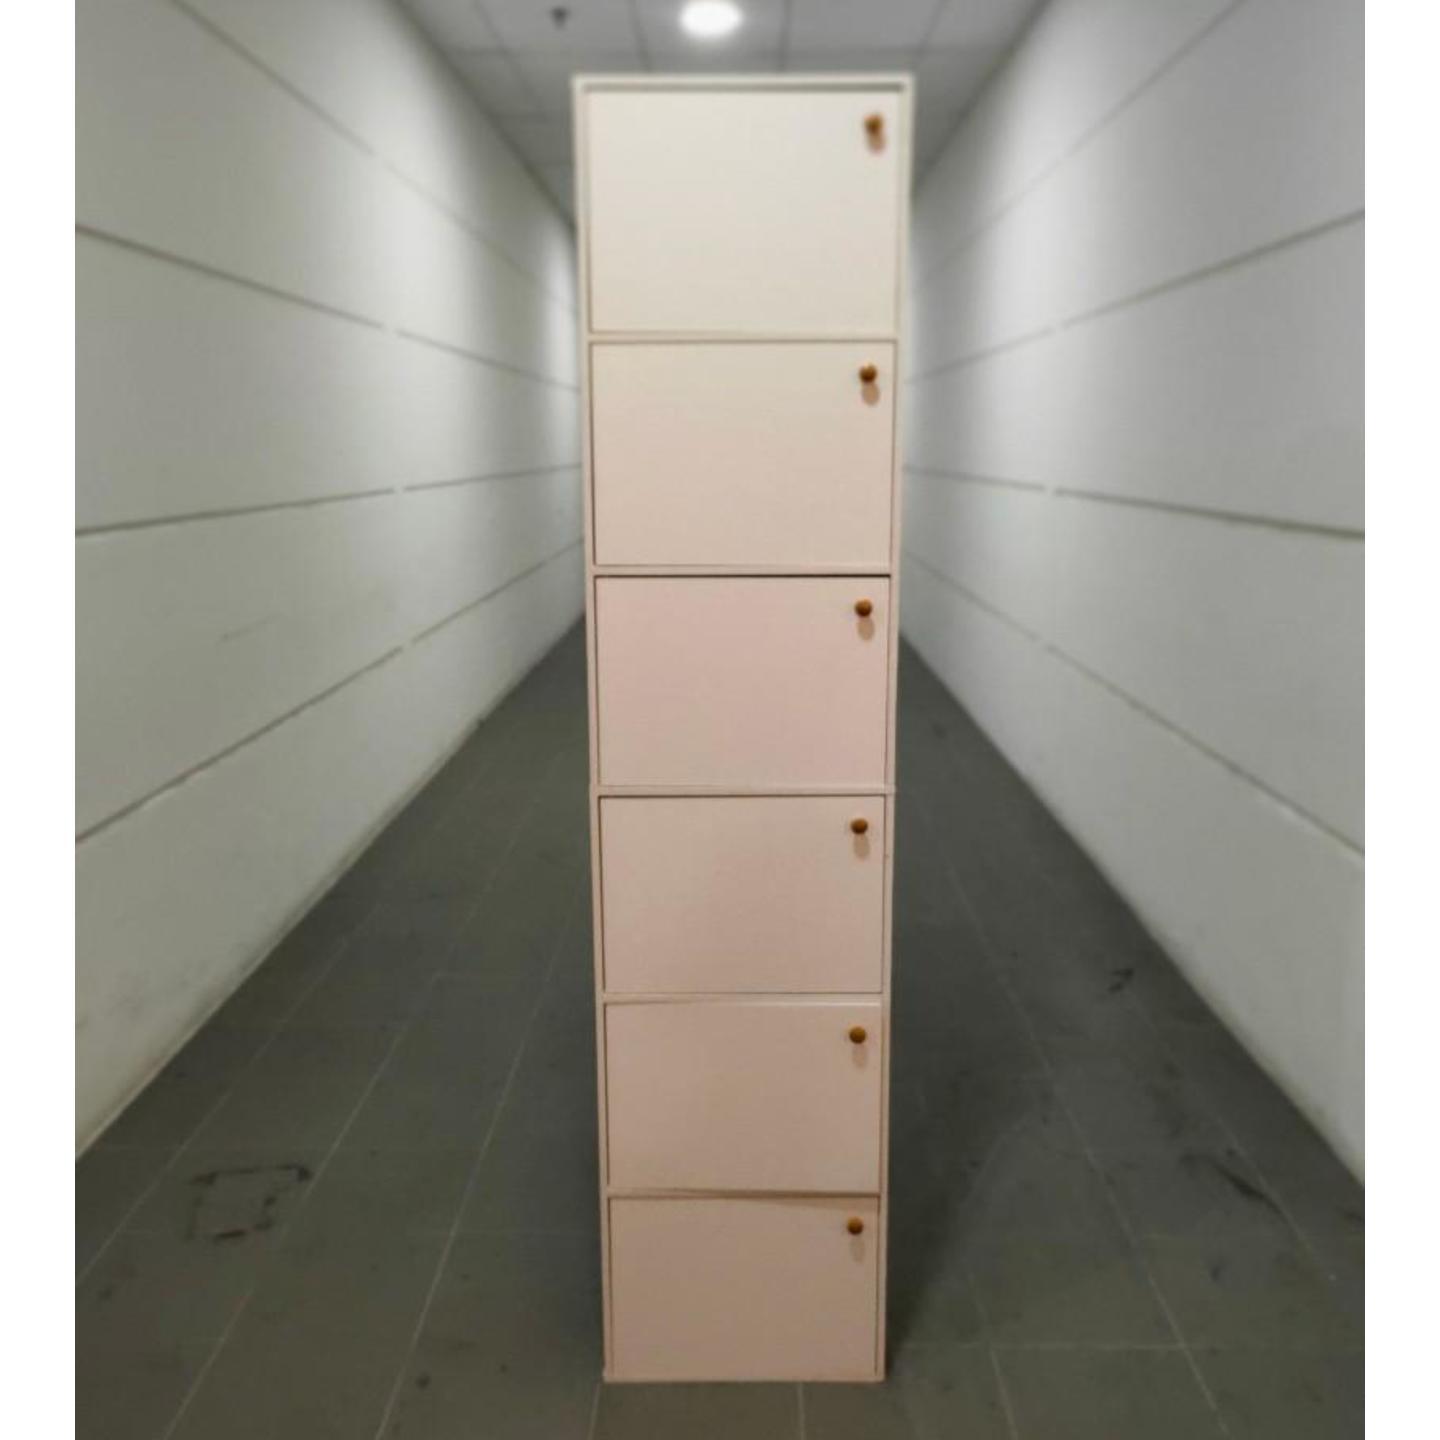 LEONIDAZ II Shoe Cabinet in WHITE (6 Doors)